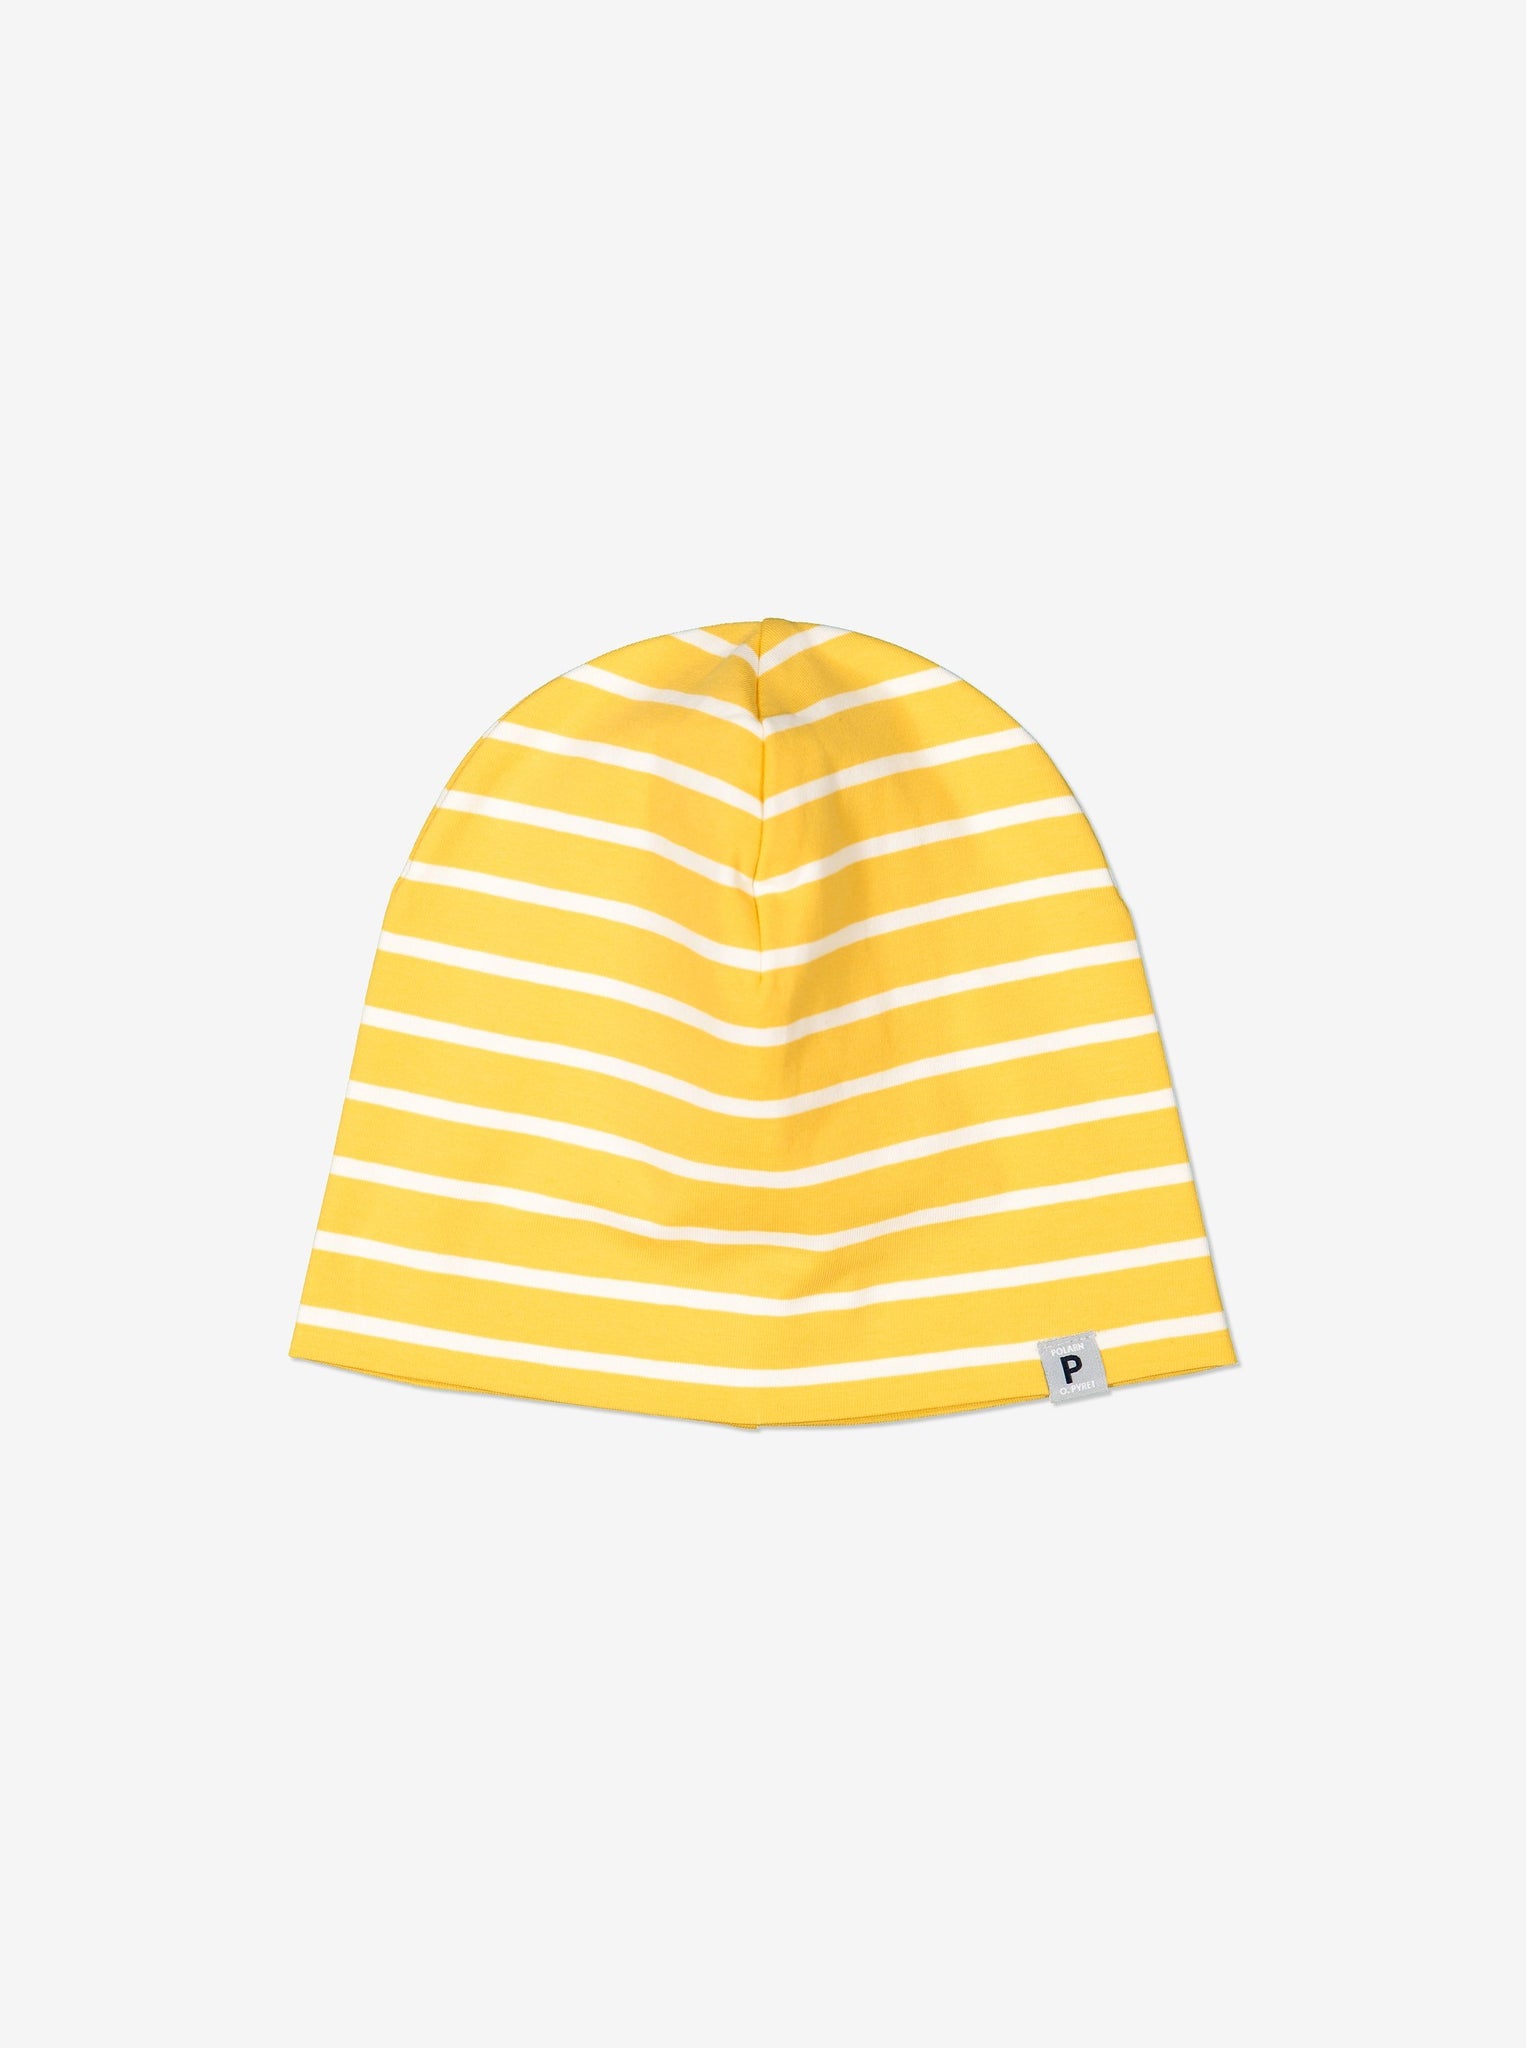 Yellow Organic Cotton Kids Beanie Hat